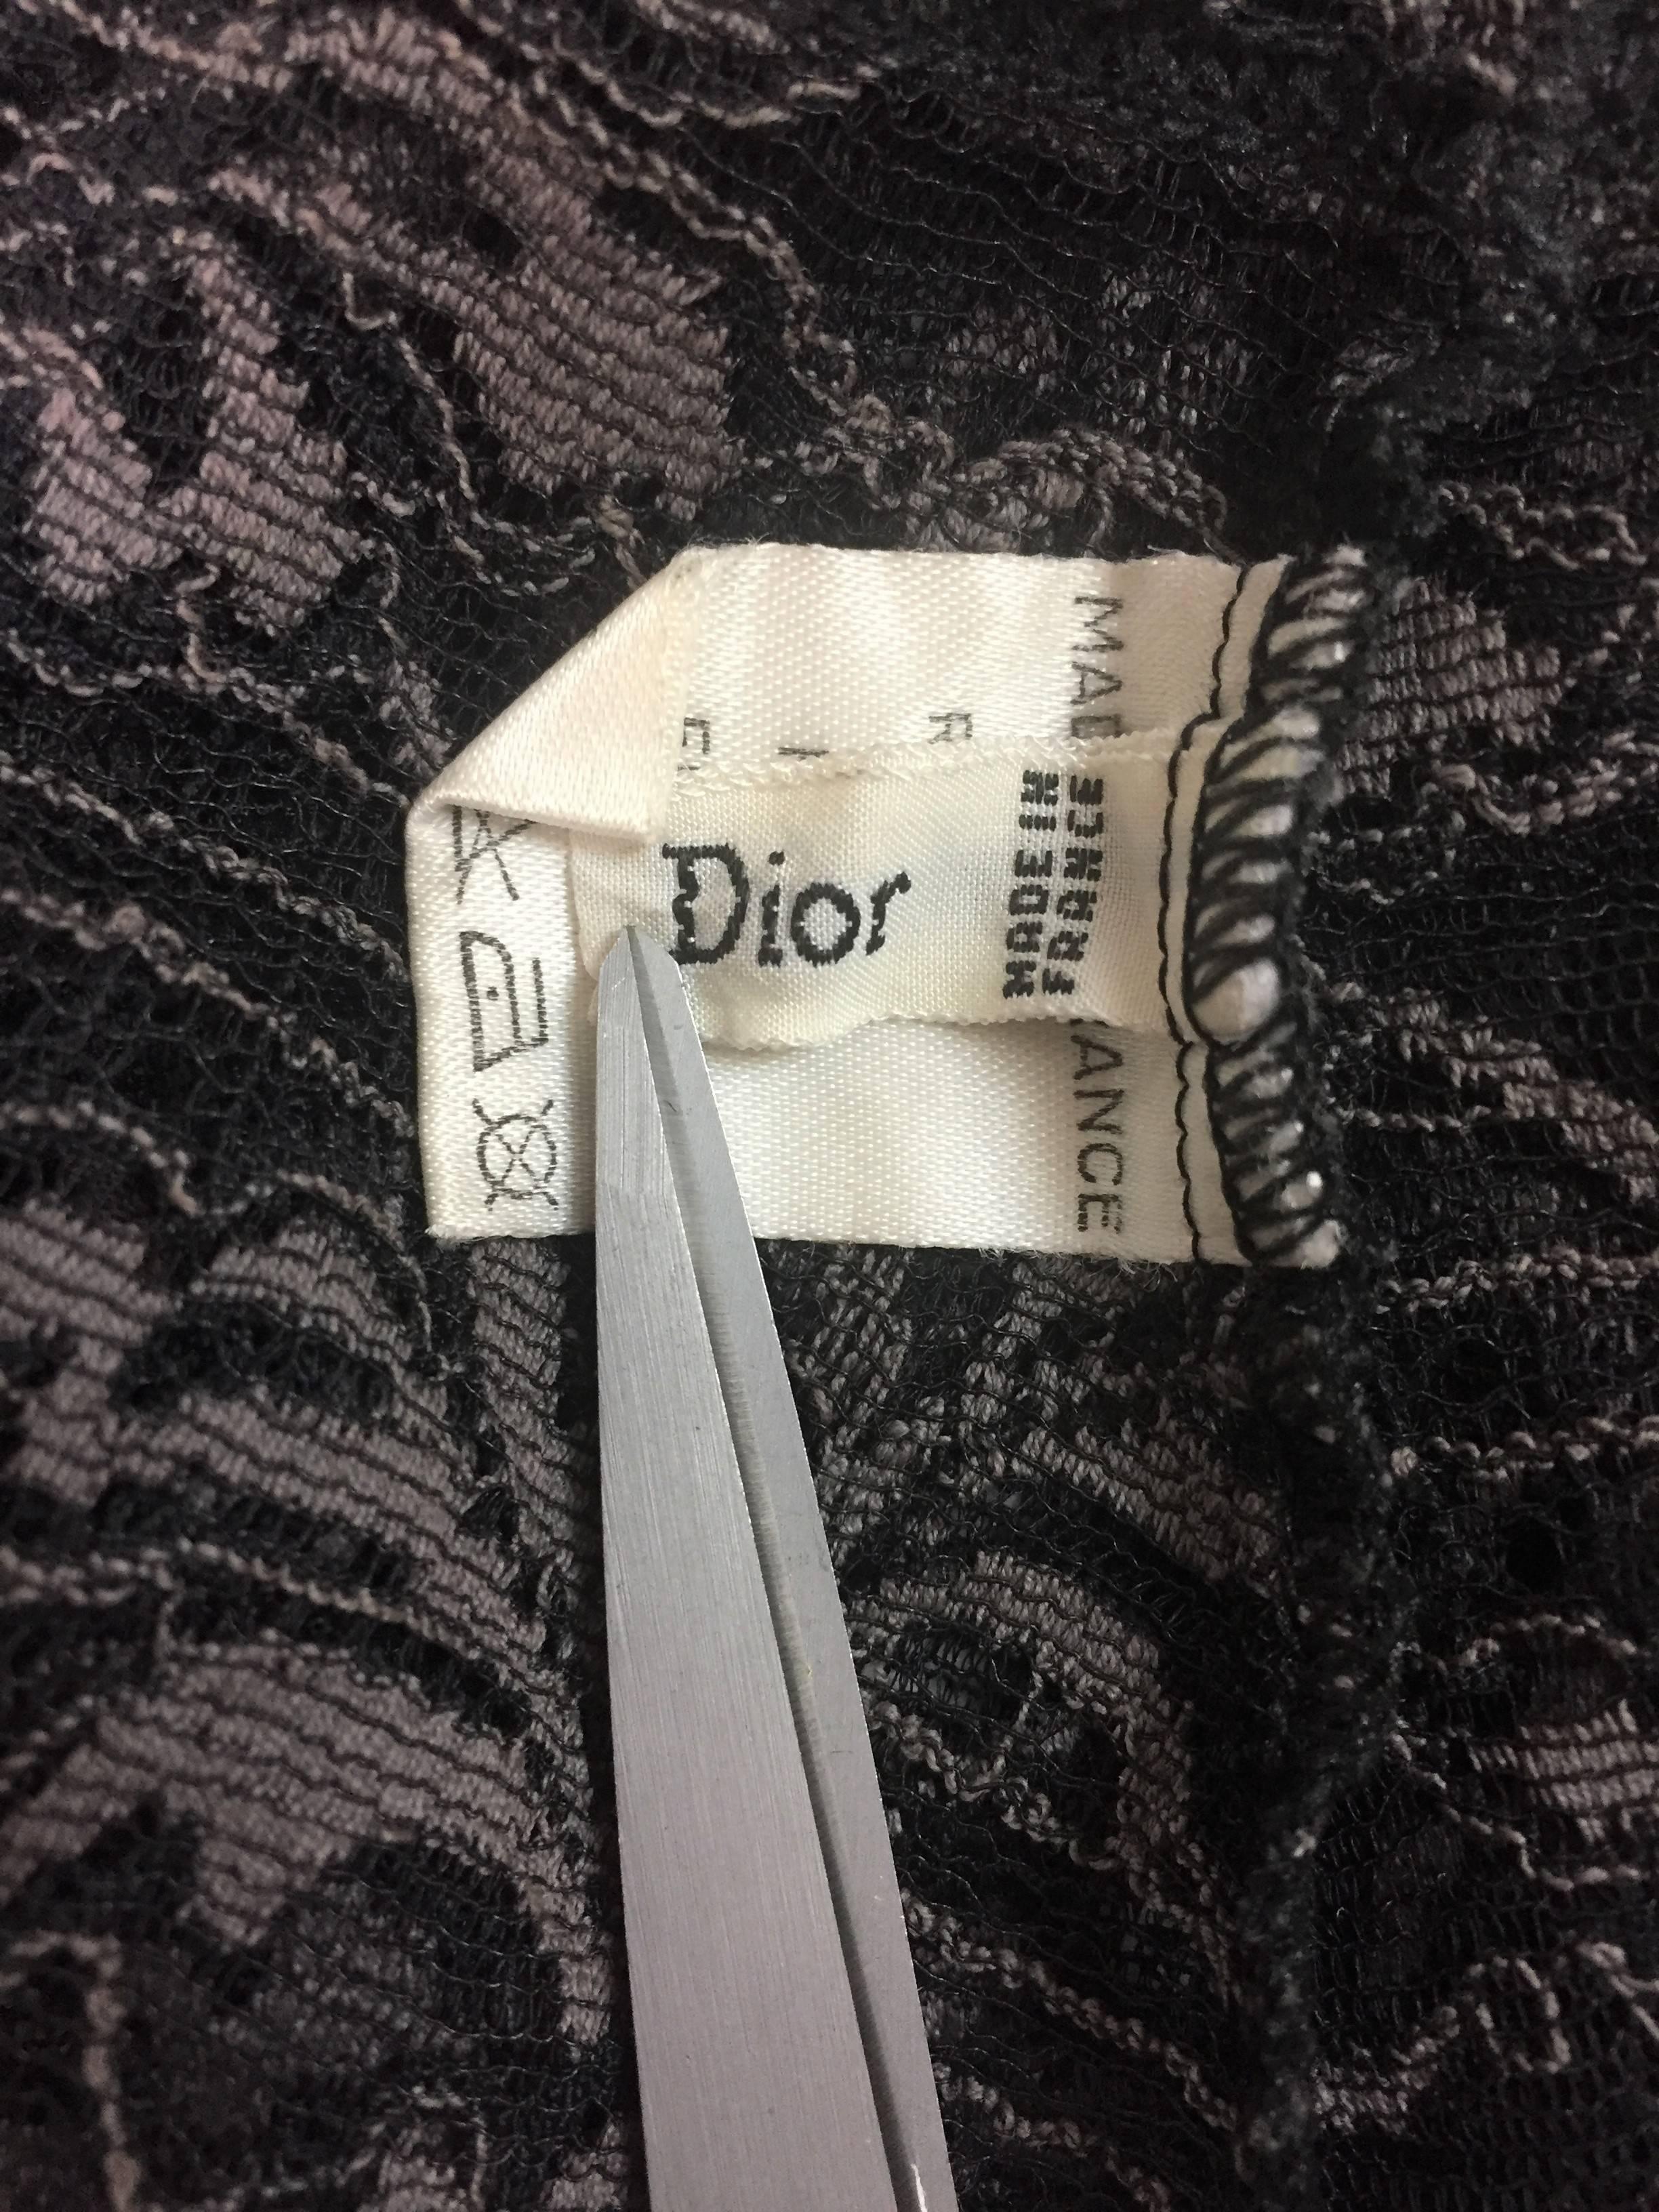 dior tights